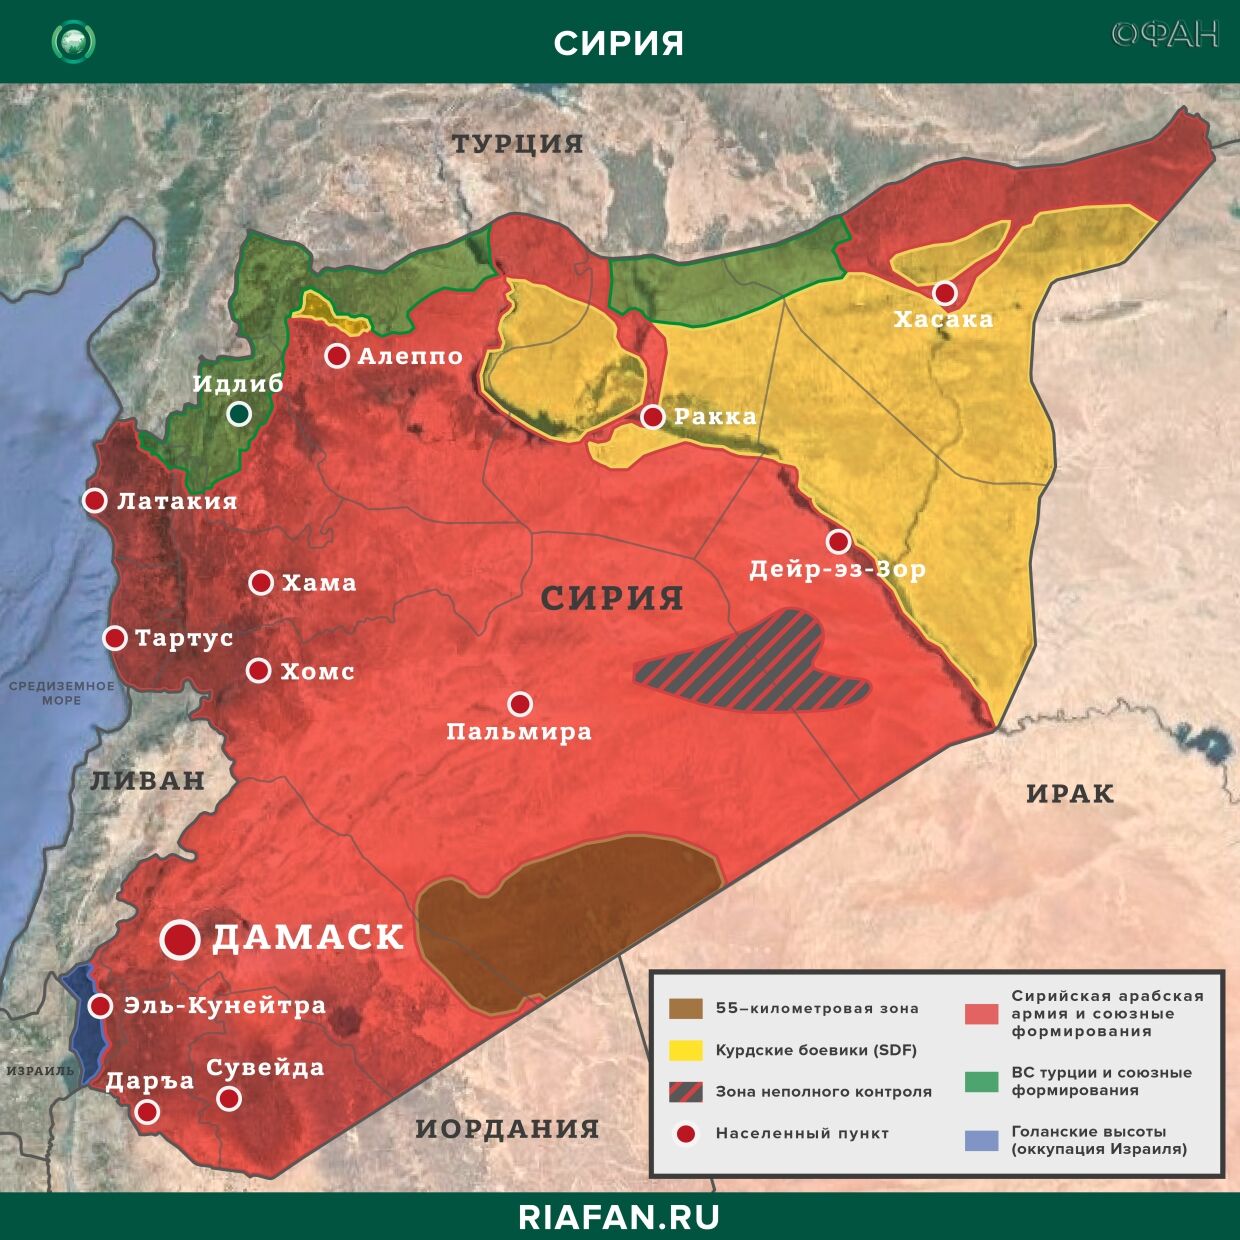 Noticias de Siria 8 Mayo 22.30: США намерены построить новую базу в Дейр-эз-Зоре, еще два человека заразились коронавирусом в САР